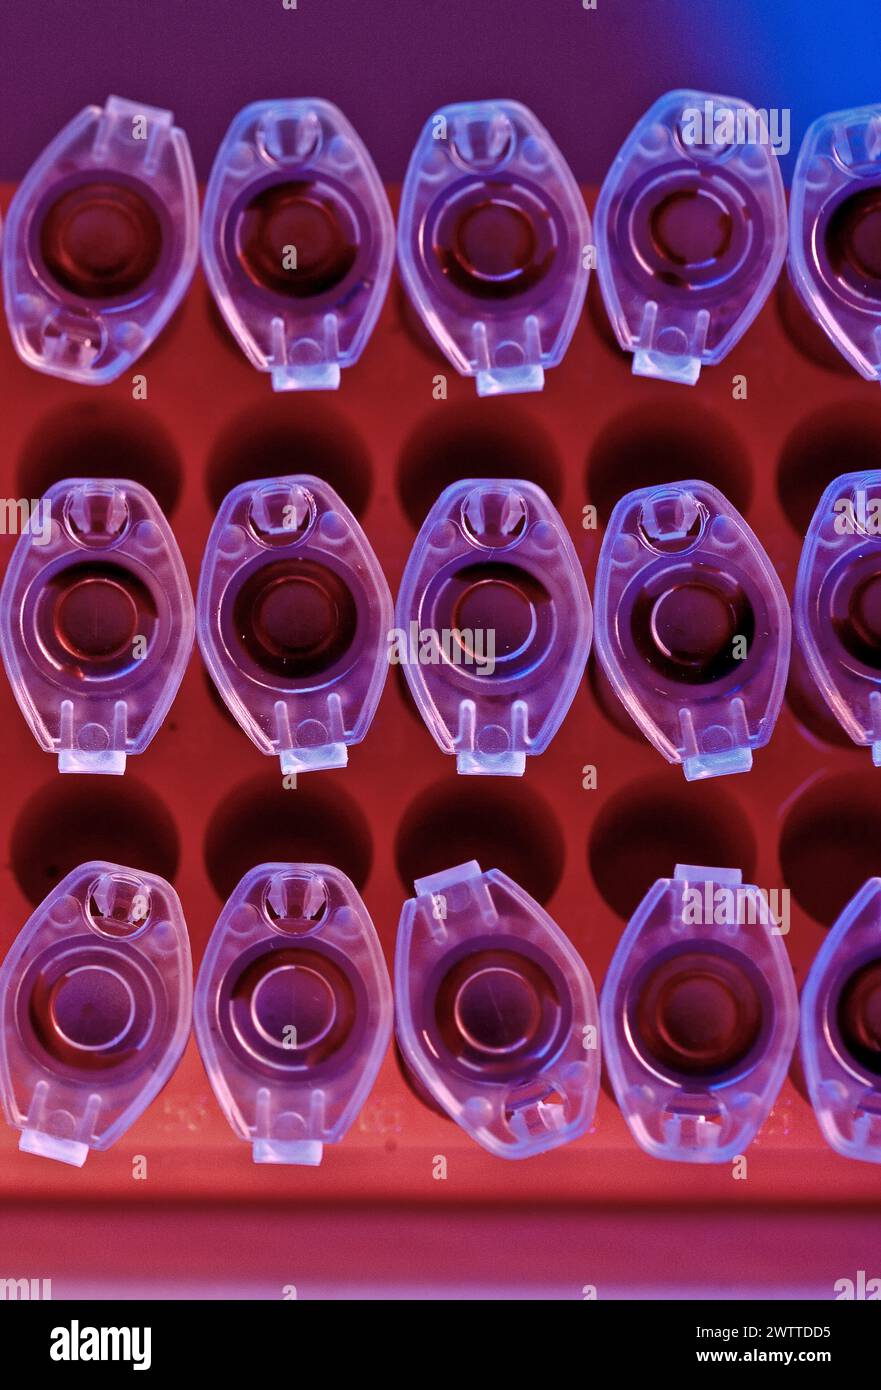 Una tavolozza di vivaci tonalità viola e rosso intenso dominano questo primo piano di piastre da laboratorio a pozzetti. Foto Stock